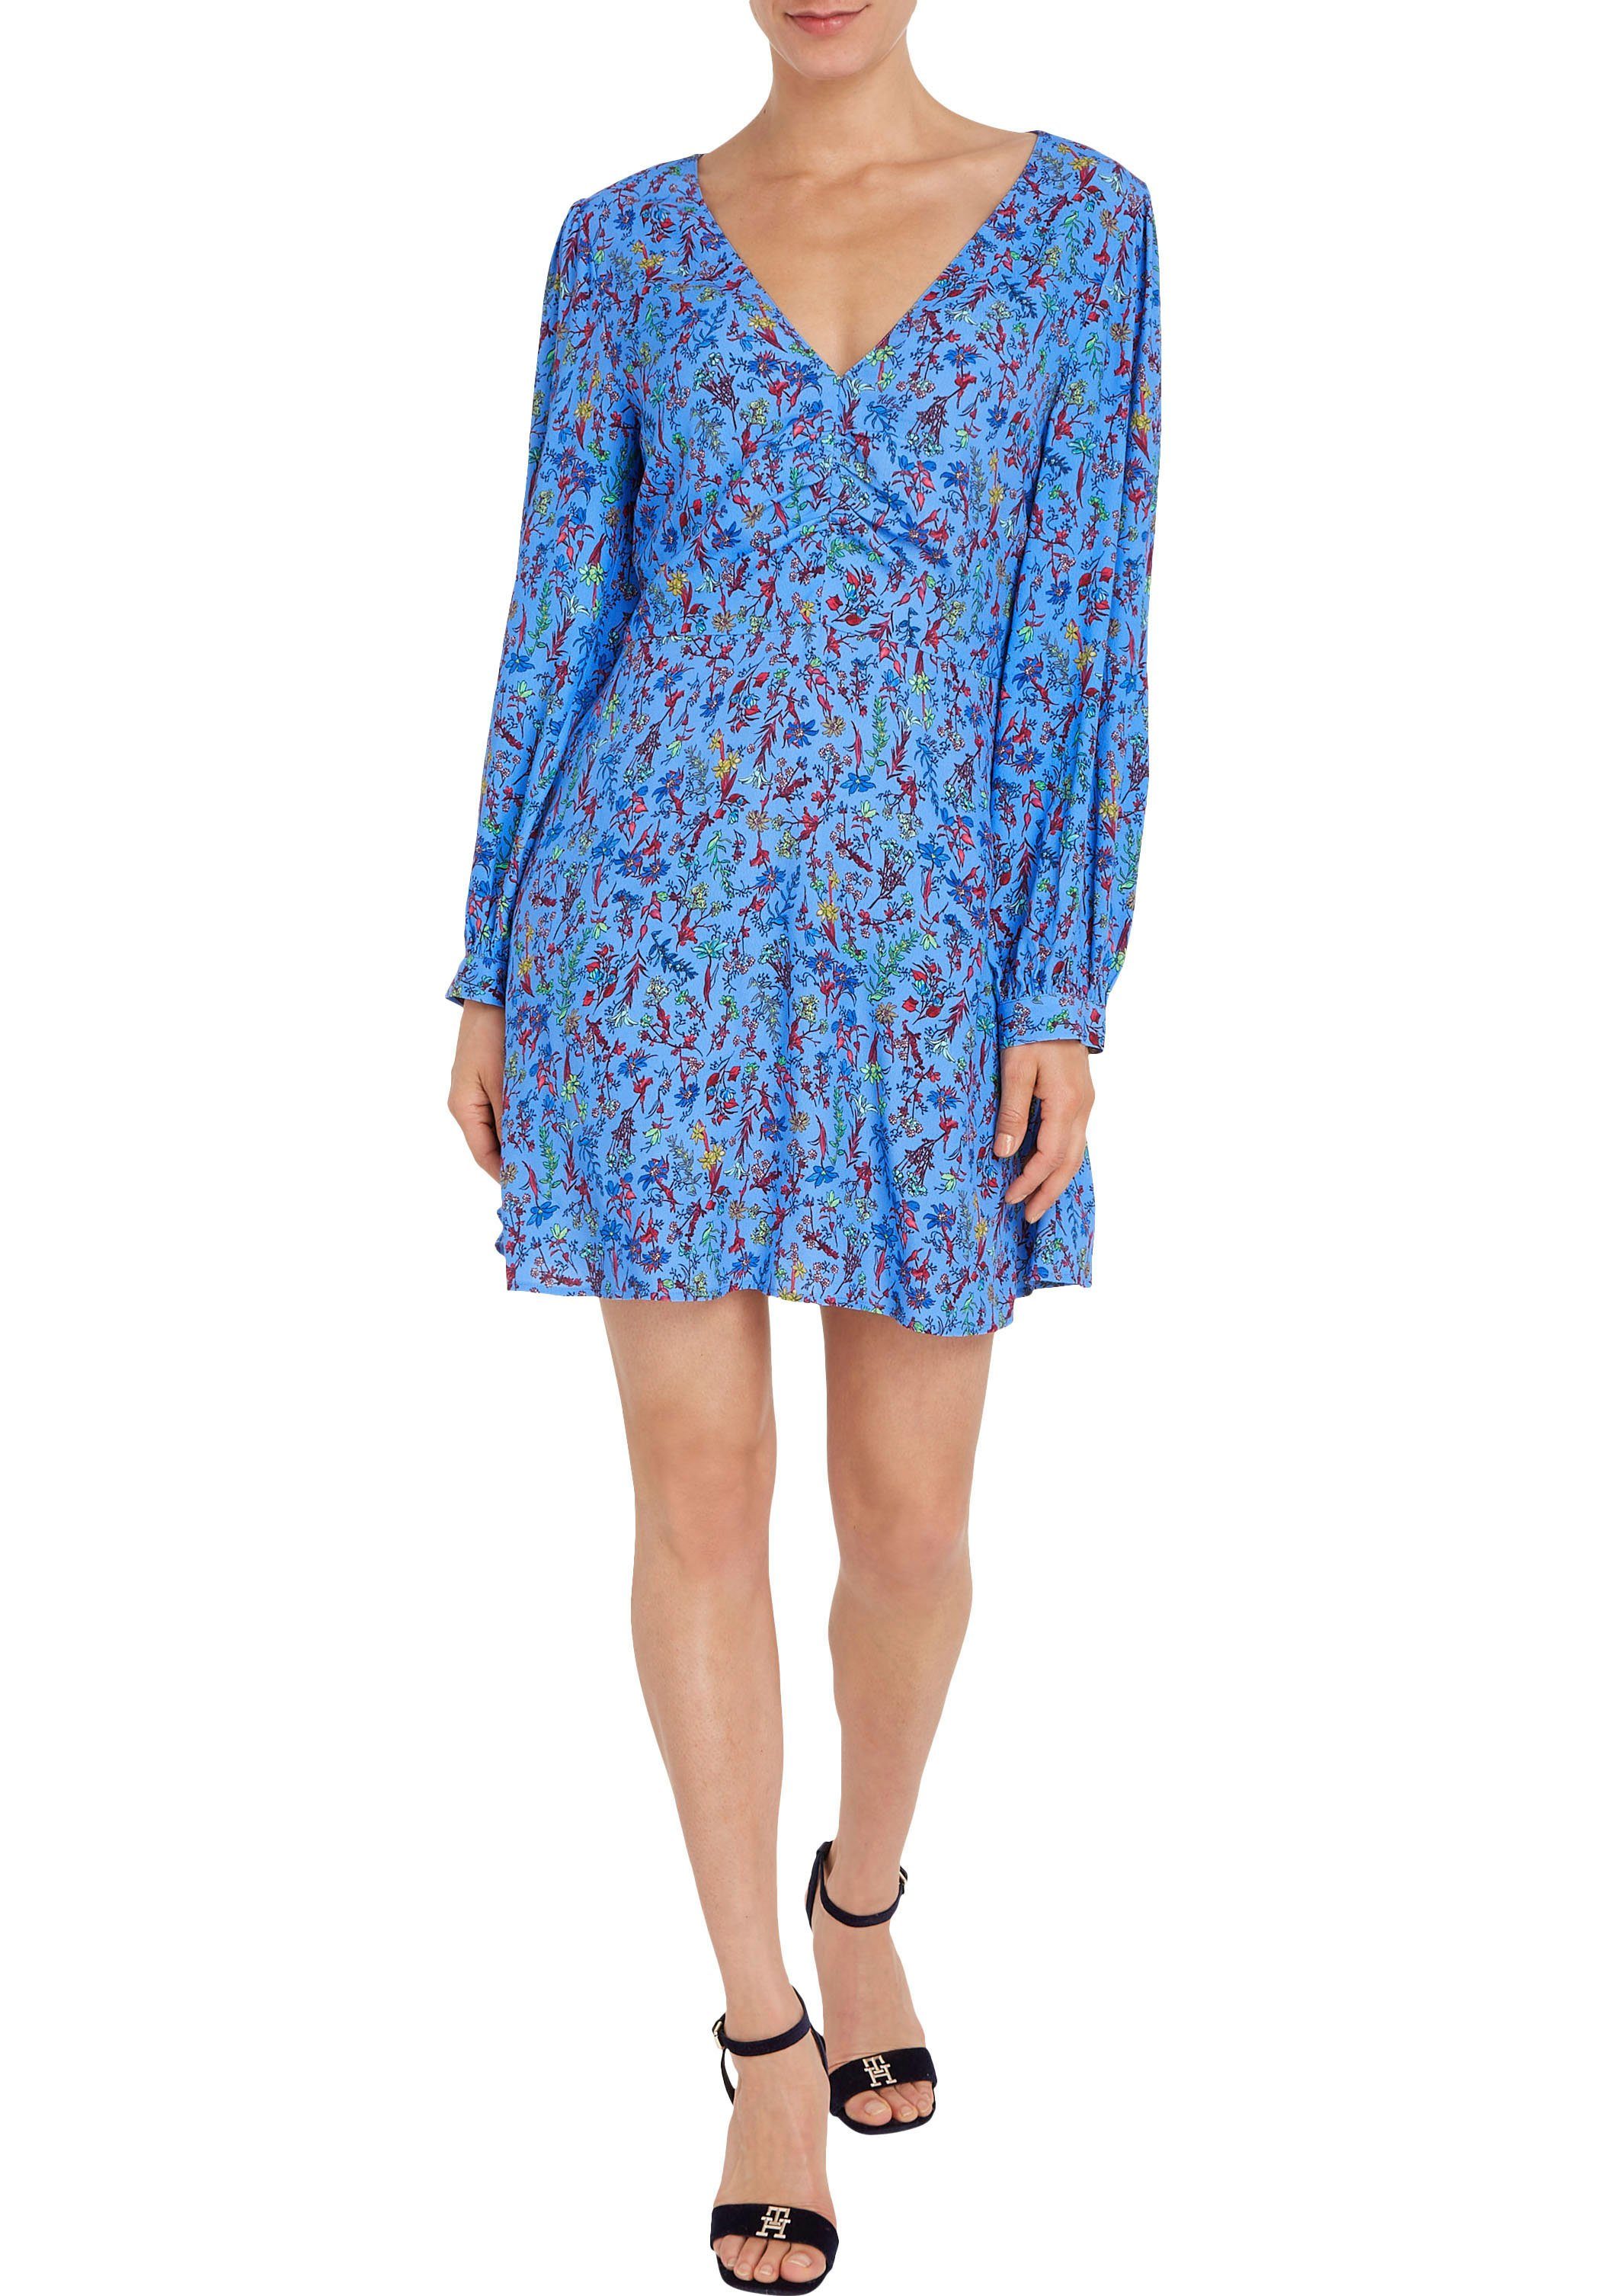 FLORAL Hilfiger VIS LS in farbenfrohem Tommy DRESS Floral-Print Shirtkleid SHORT